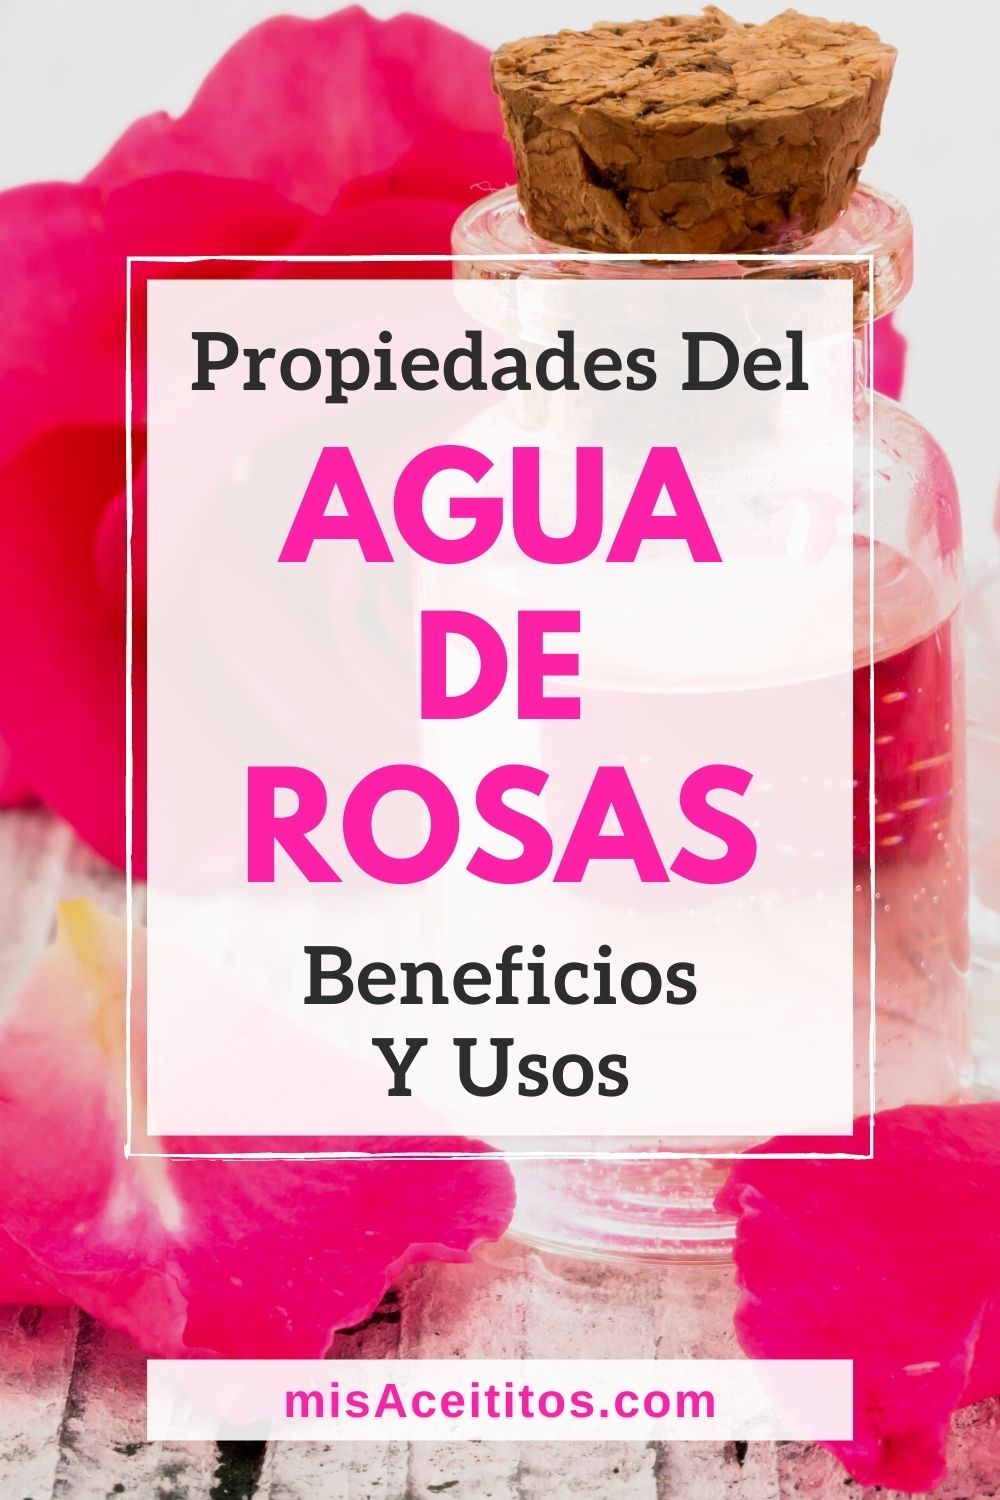 Propiedades y usos del agua de rosas.